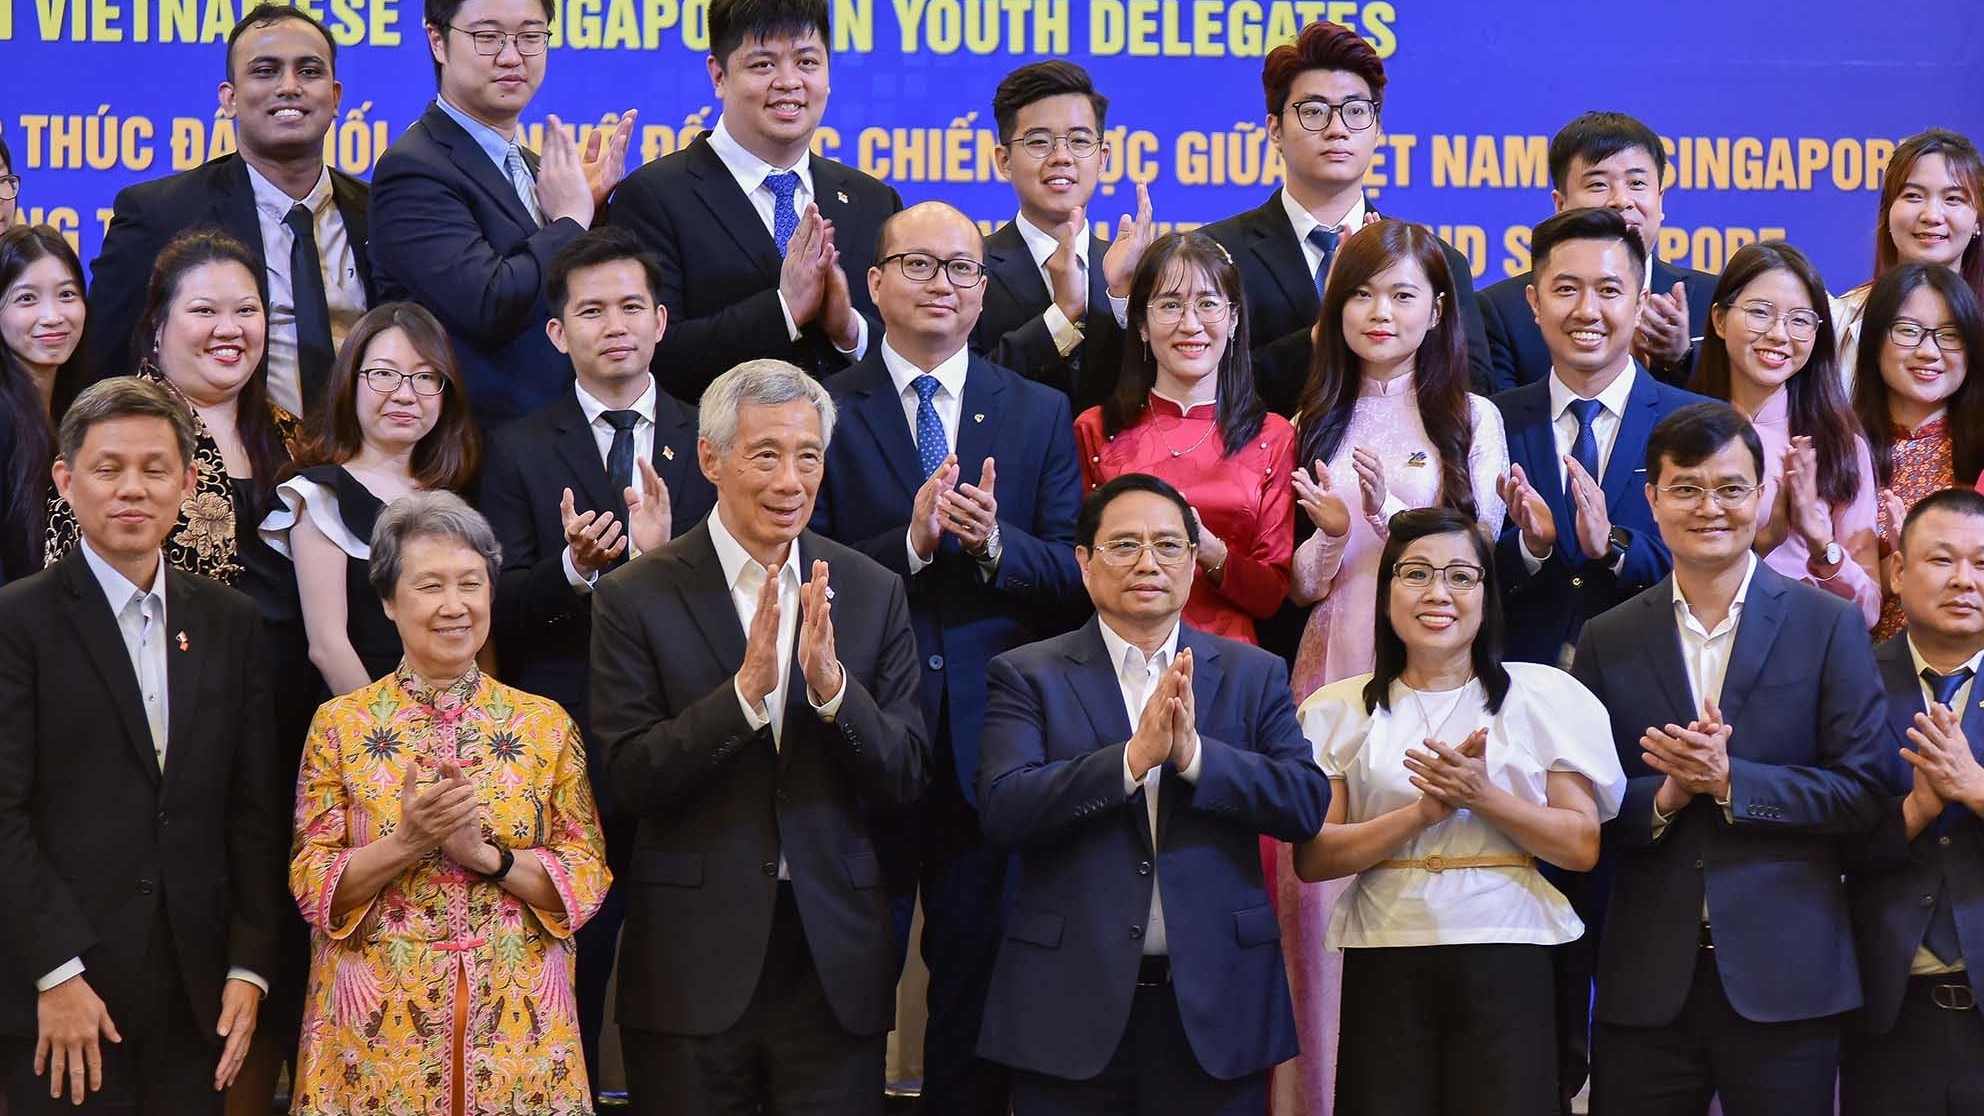 Thủ tướng Việt Nam-Singapore đối thoại với lãnh đạo trẻ hai nước